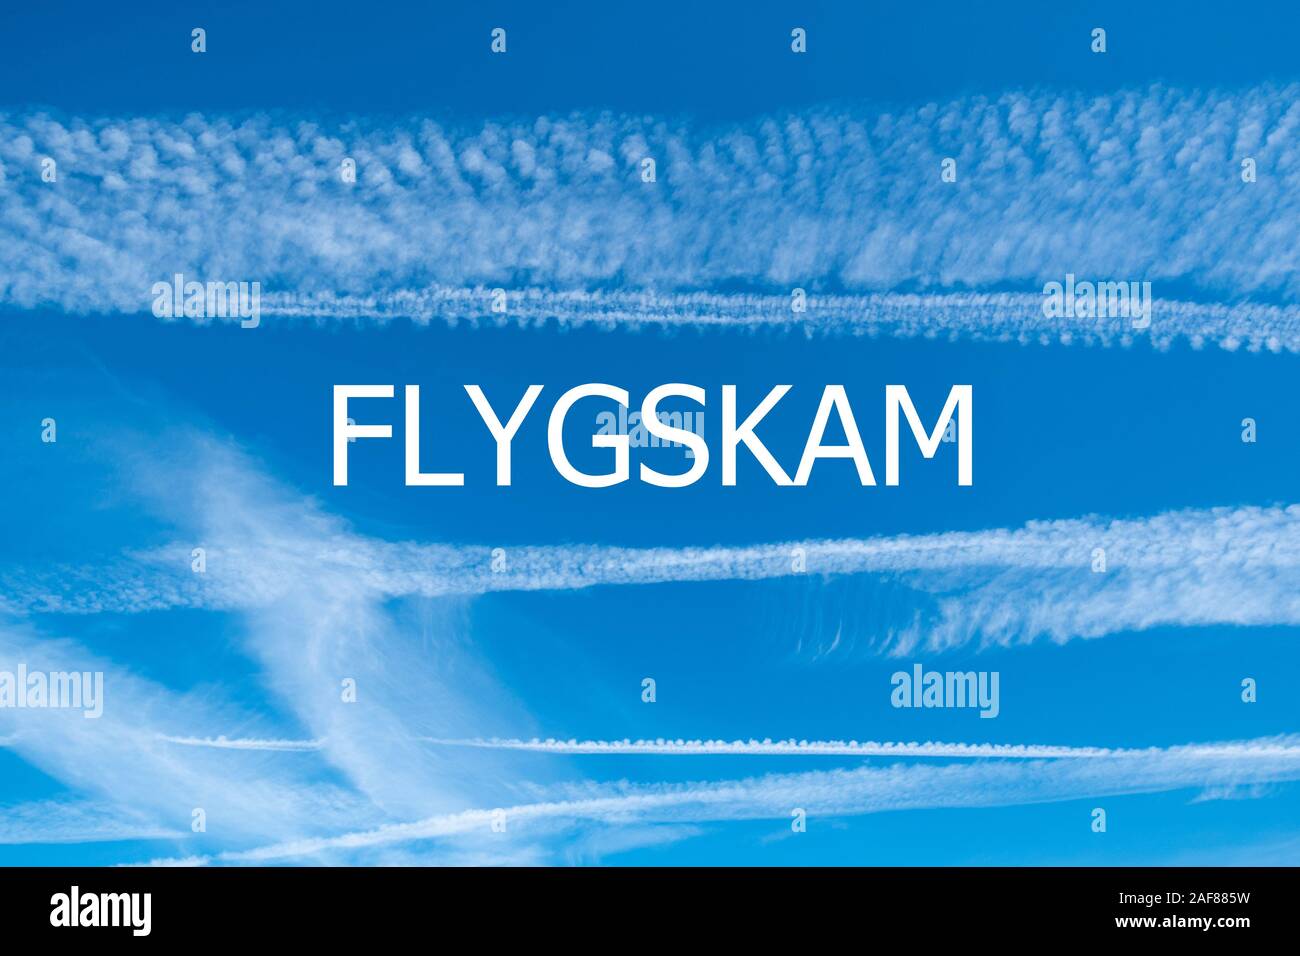 Le changement climatique et l'Flygskam concept image avec ciel bleu et des traînées de vapeur à partir d'aéronefs avec le mot (Flygskam suédois pour voler la honte) Banque D'Images